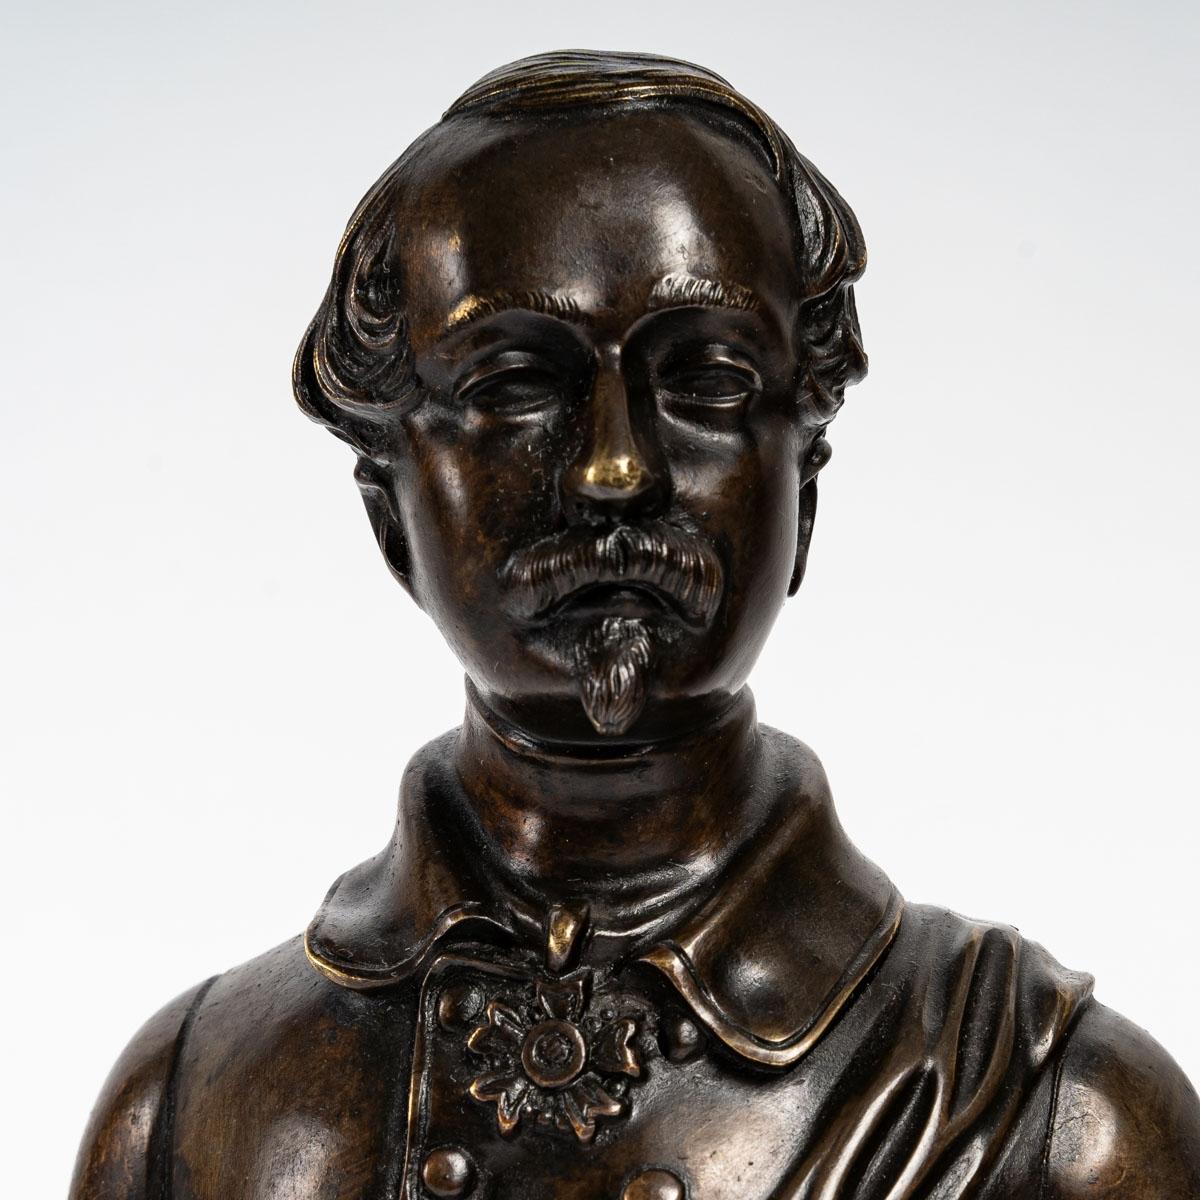 Buste en bronze de Napoléon III, 19e siècle

Sculpture représentant un buste de Napoléon III du XIXe siècle, Période Napoléon III

Dimensions : H : 22cm, L : 11cm, P : 9cm : H : 22cm, L : 11cm, P : 9cm